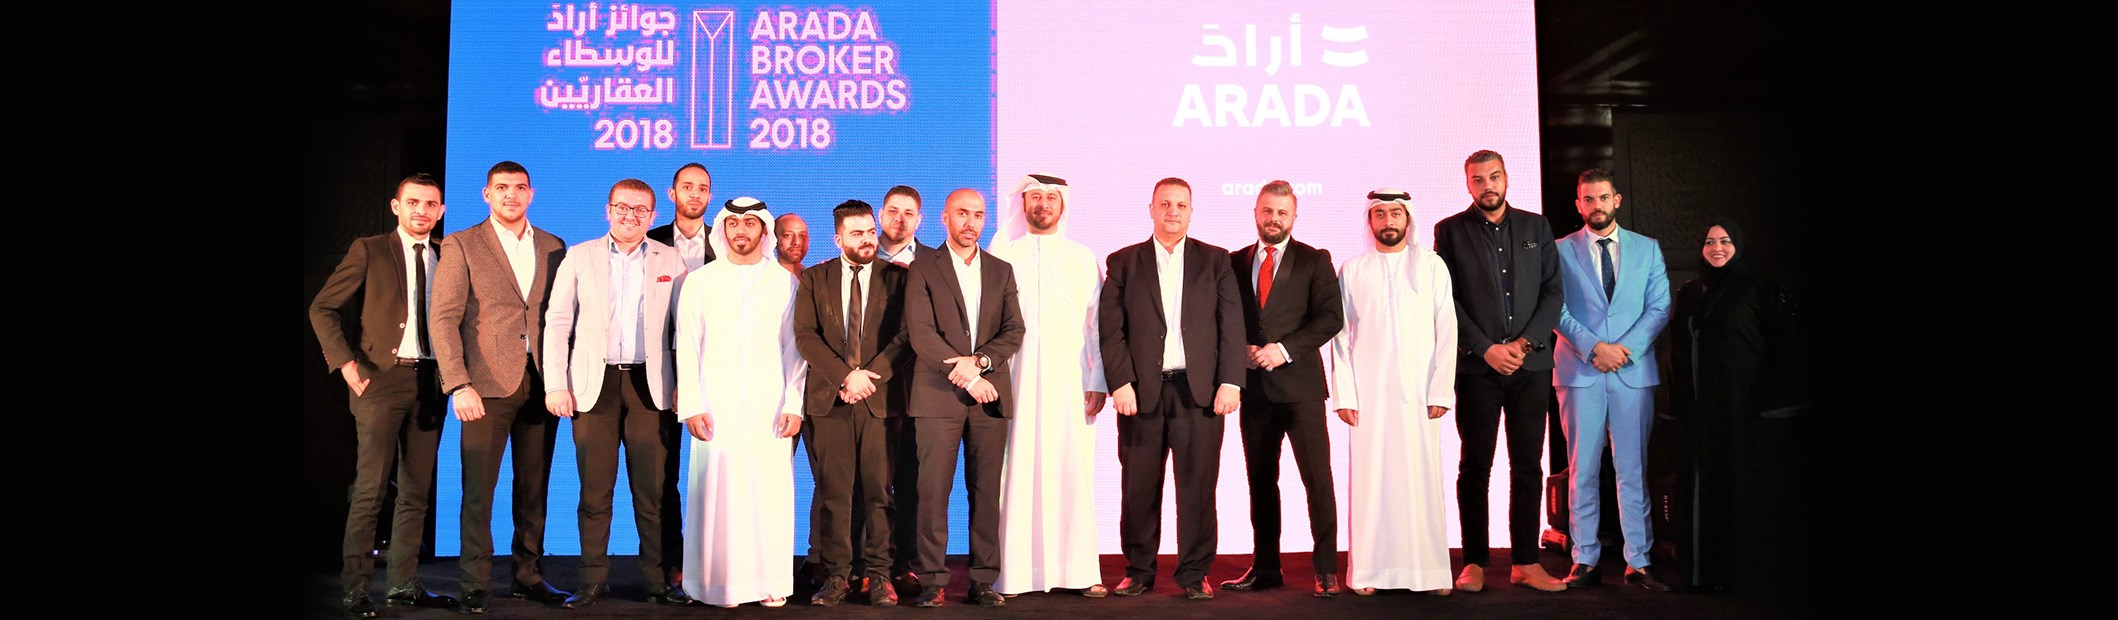 Arada honours top-perfoming brokers at Dubai awards ceremony